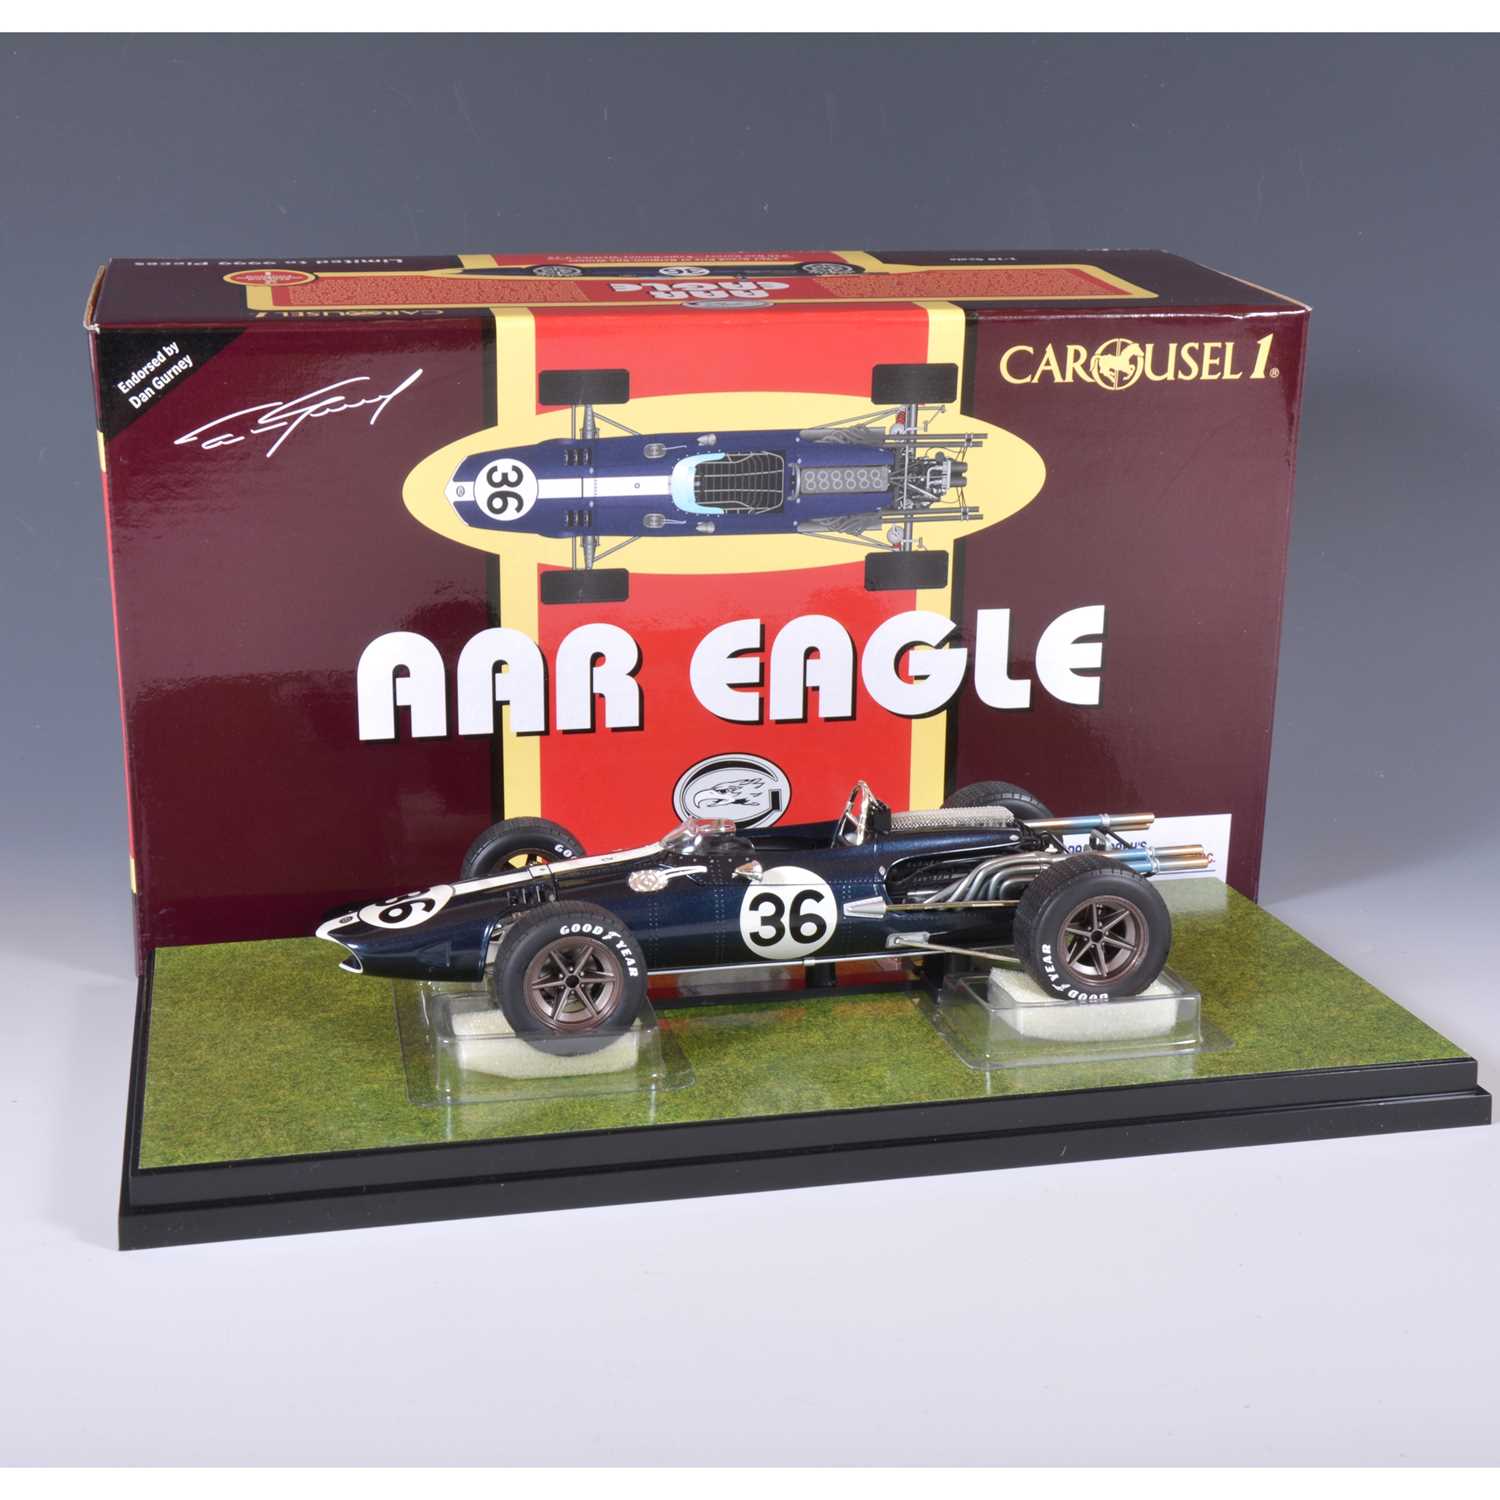 Lot 40 - Carousel 1 die-cast 1:18 scale model; AAR Eagle F1 (1967) Dan Gurney